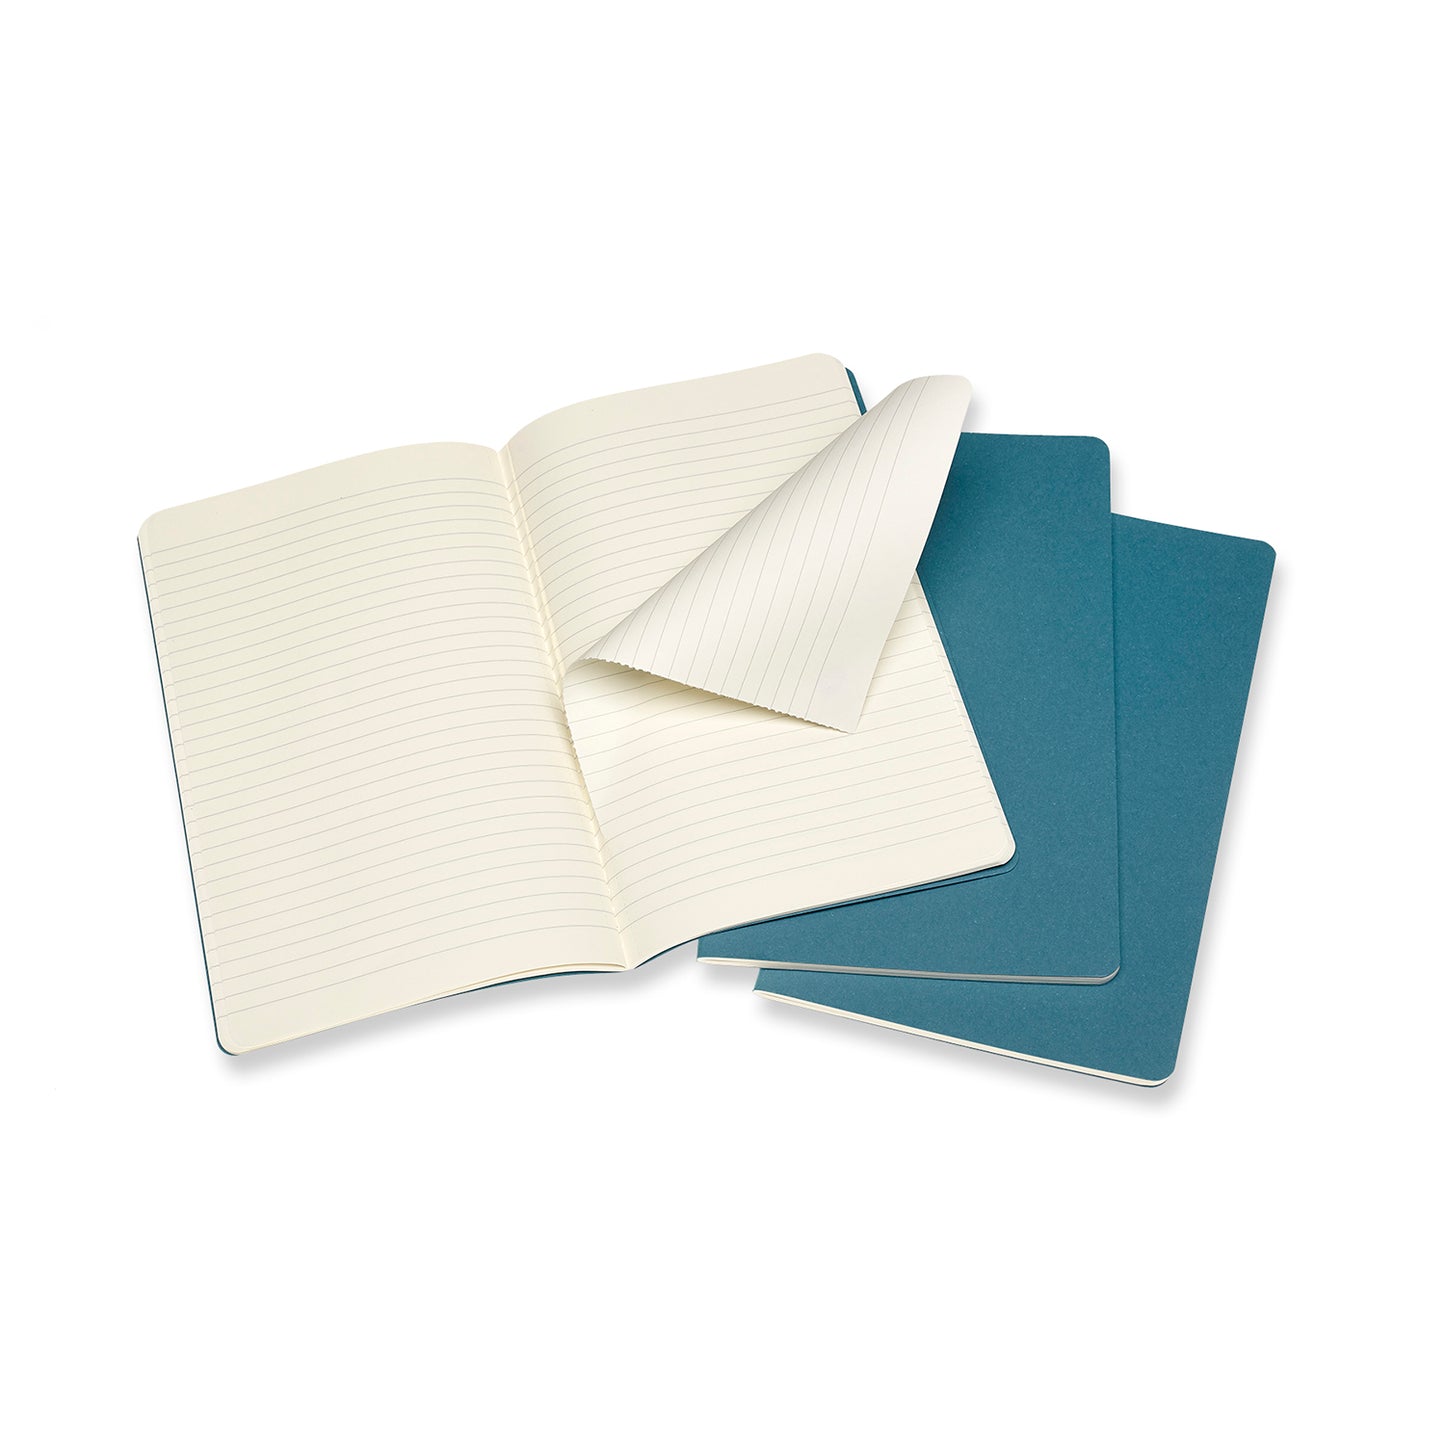 Steel Blue Large Cahier Notebook - Set of 3 Black / Ruled / Large,Black / Plain / Large,Black / Dotted / Large,Black / Squared / Large,Brisk Blue / Ruled / Large,Brisk Blue / Plain / Large,Brisk Blue / Dotted / Large,Brisk Blue / Squared / Large Moleskine